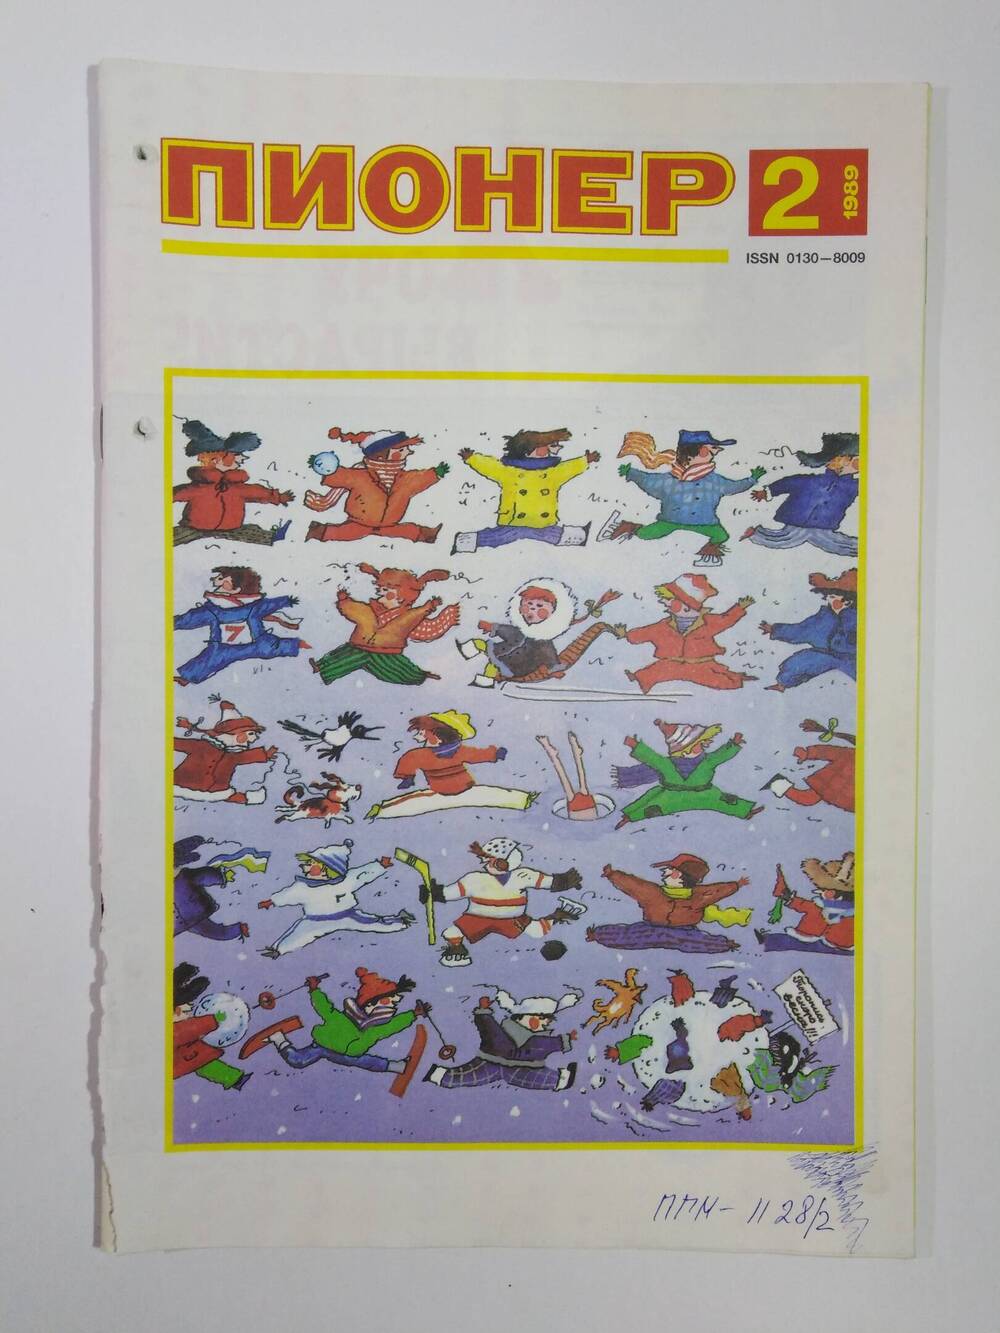 Журнал Пионер №2 из подшивки журналов за 1989 г.